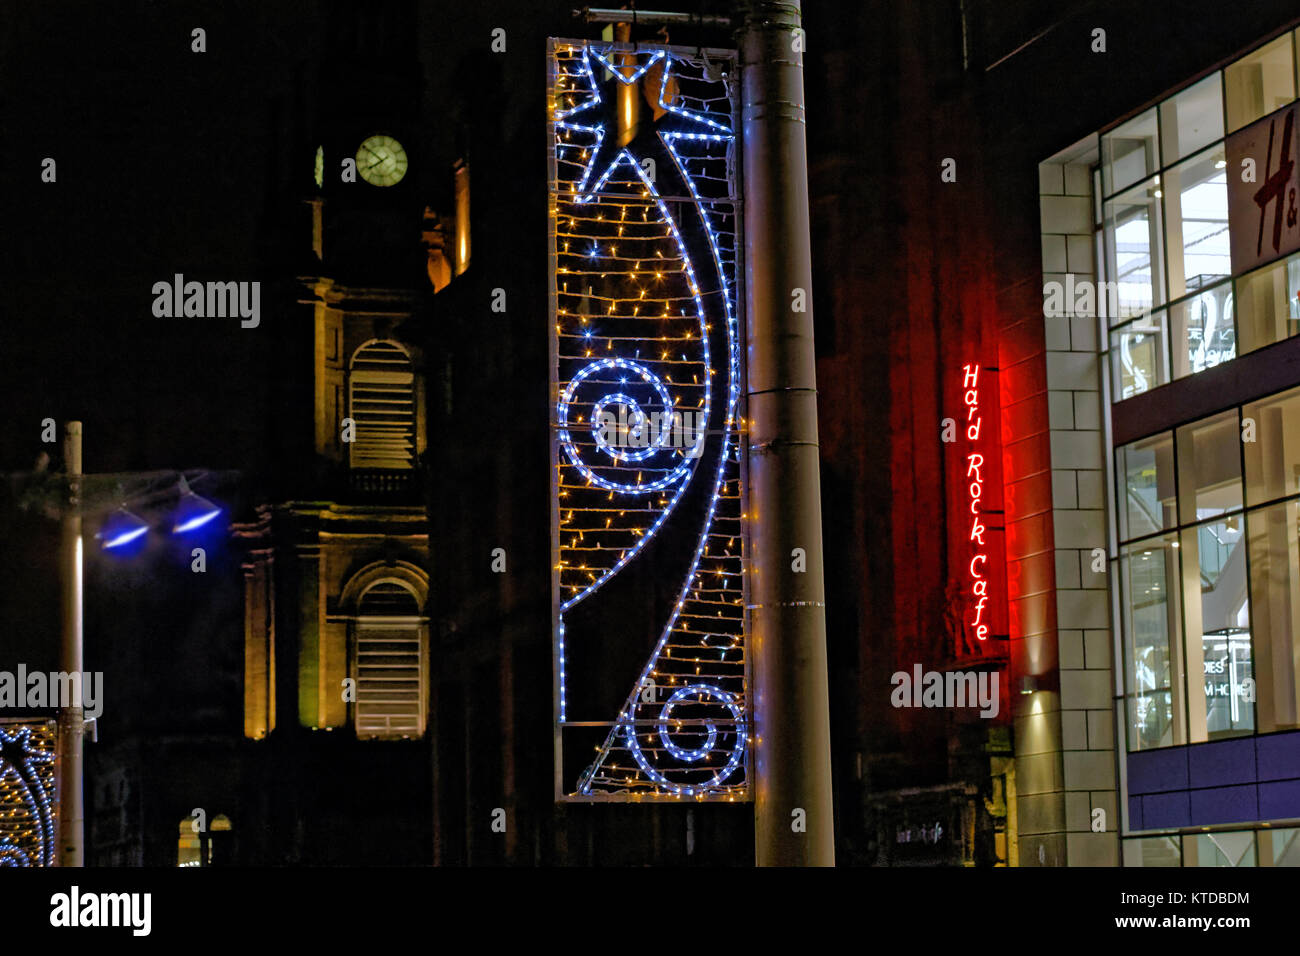 Hard Rock cafe cartel de neón que Glasgow Nochebuena nochevieja hogmanay noche decoraciones en street night Foto de stock